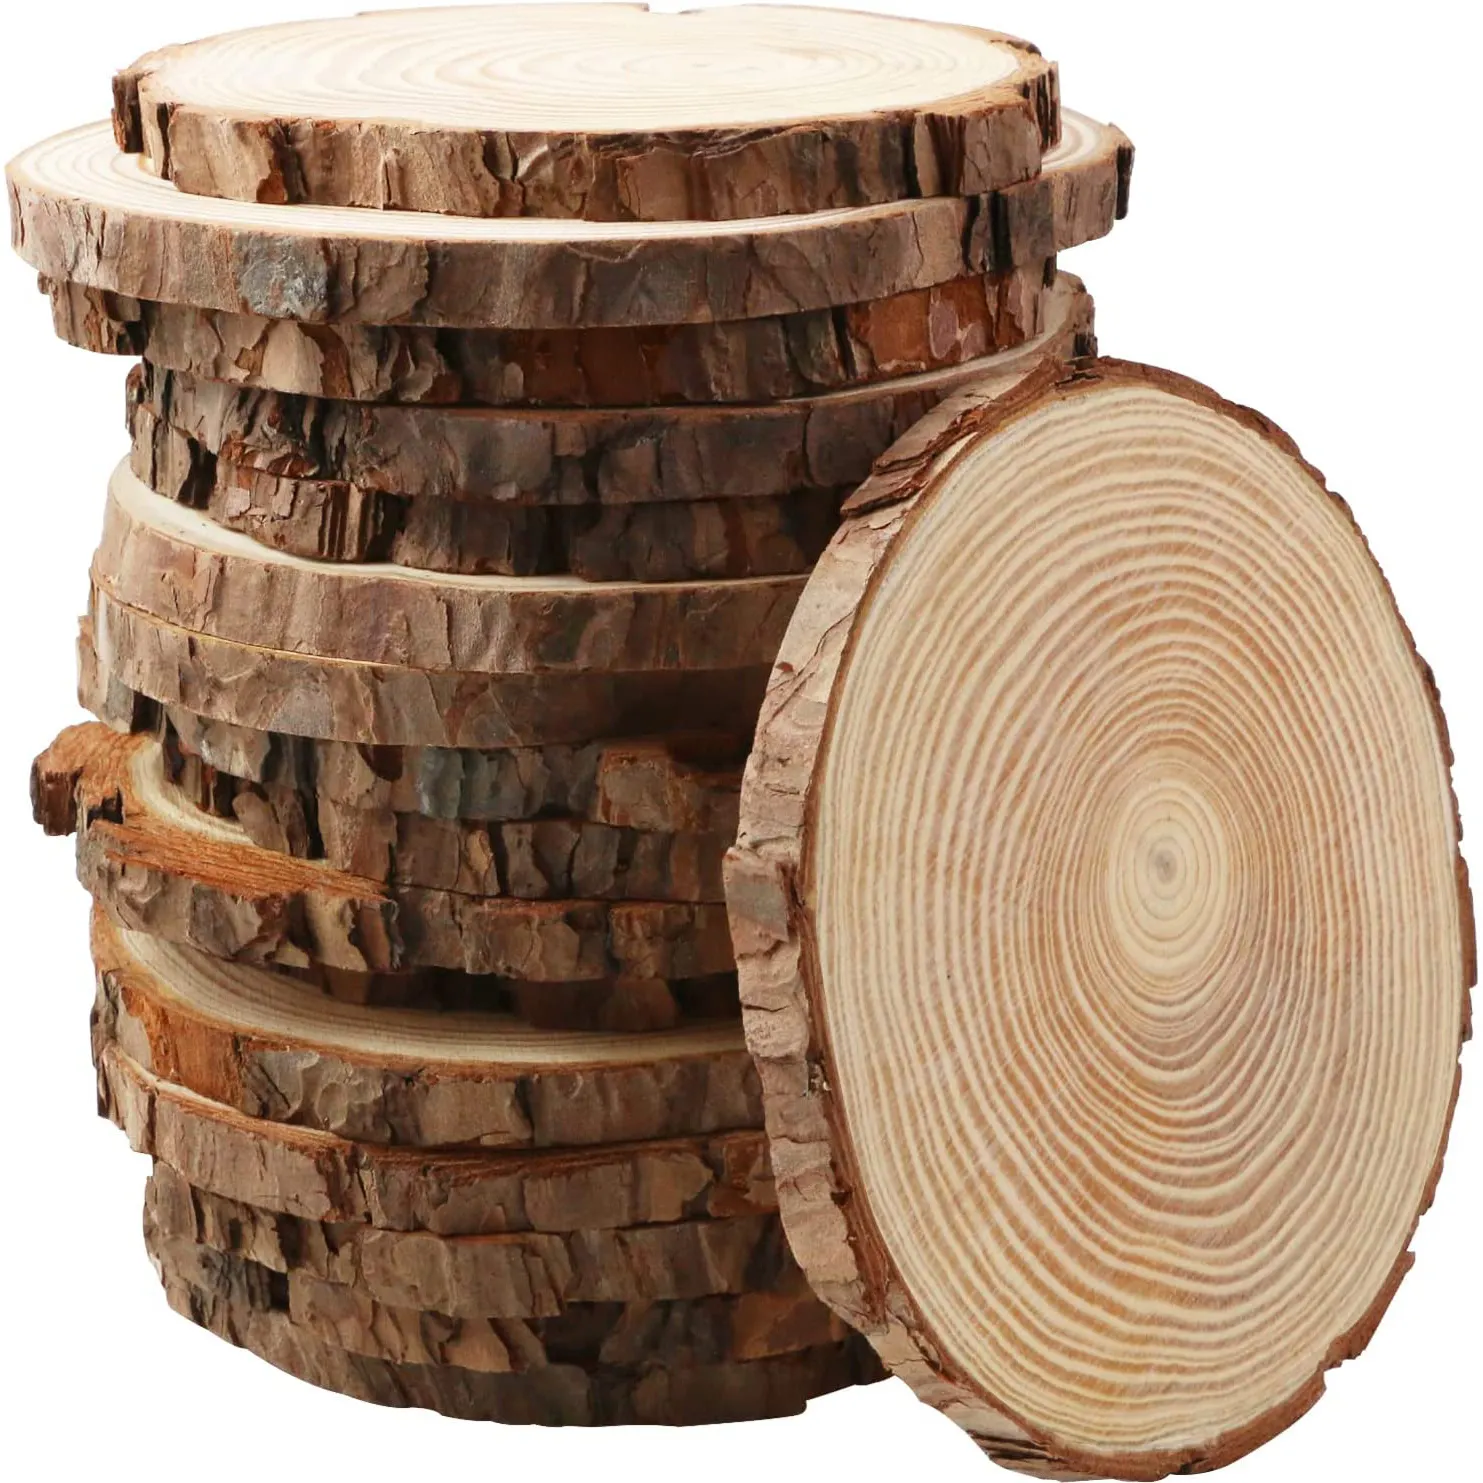 Незавершенный деревянный лоток с корой, осевой элемент овальной древесины